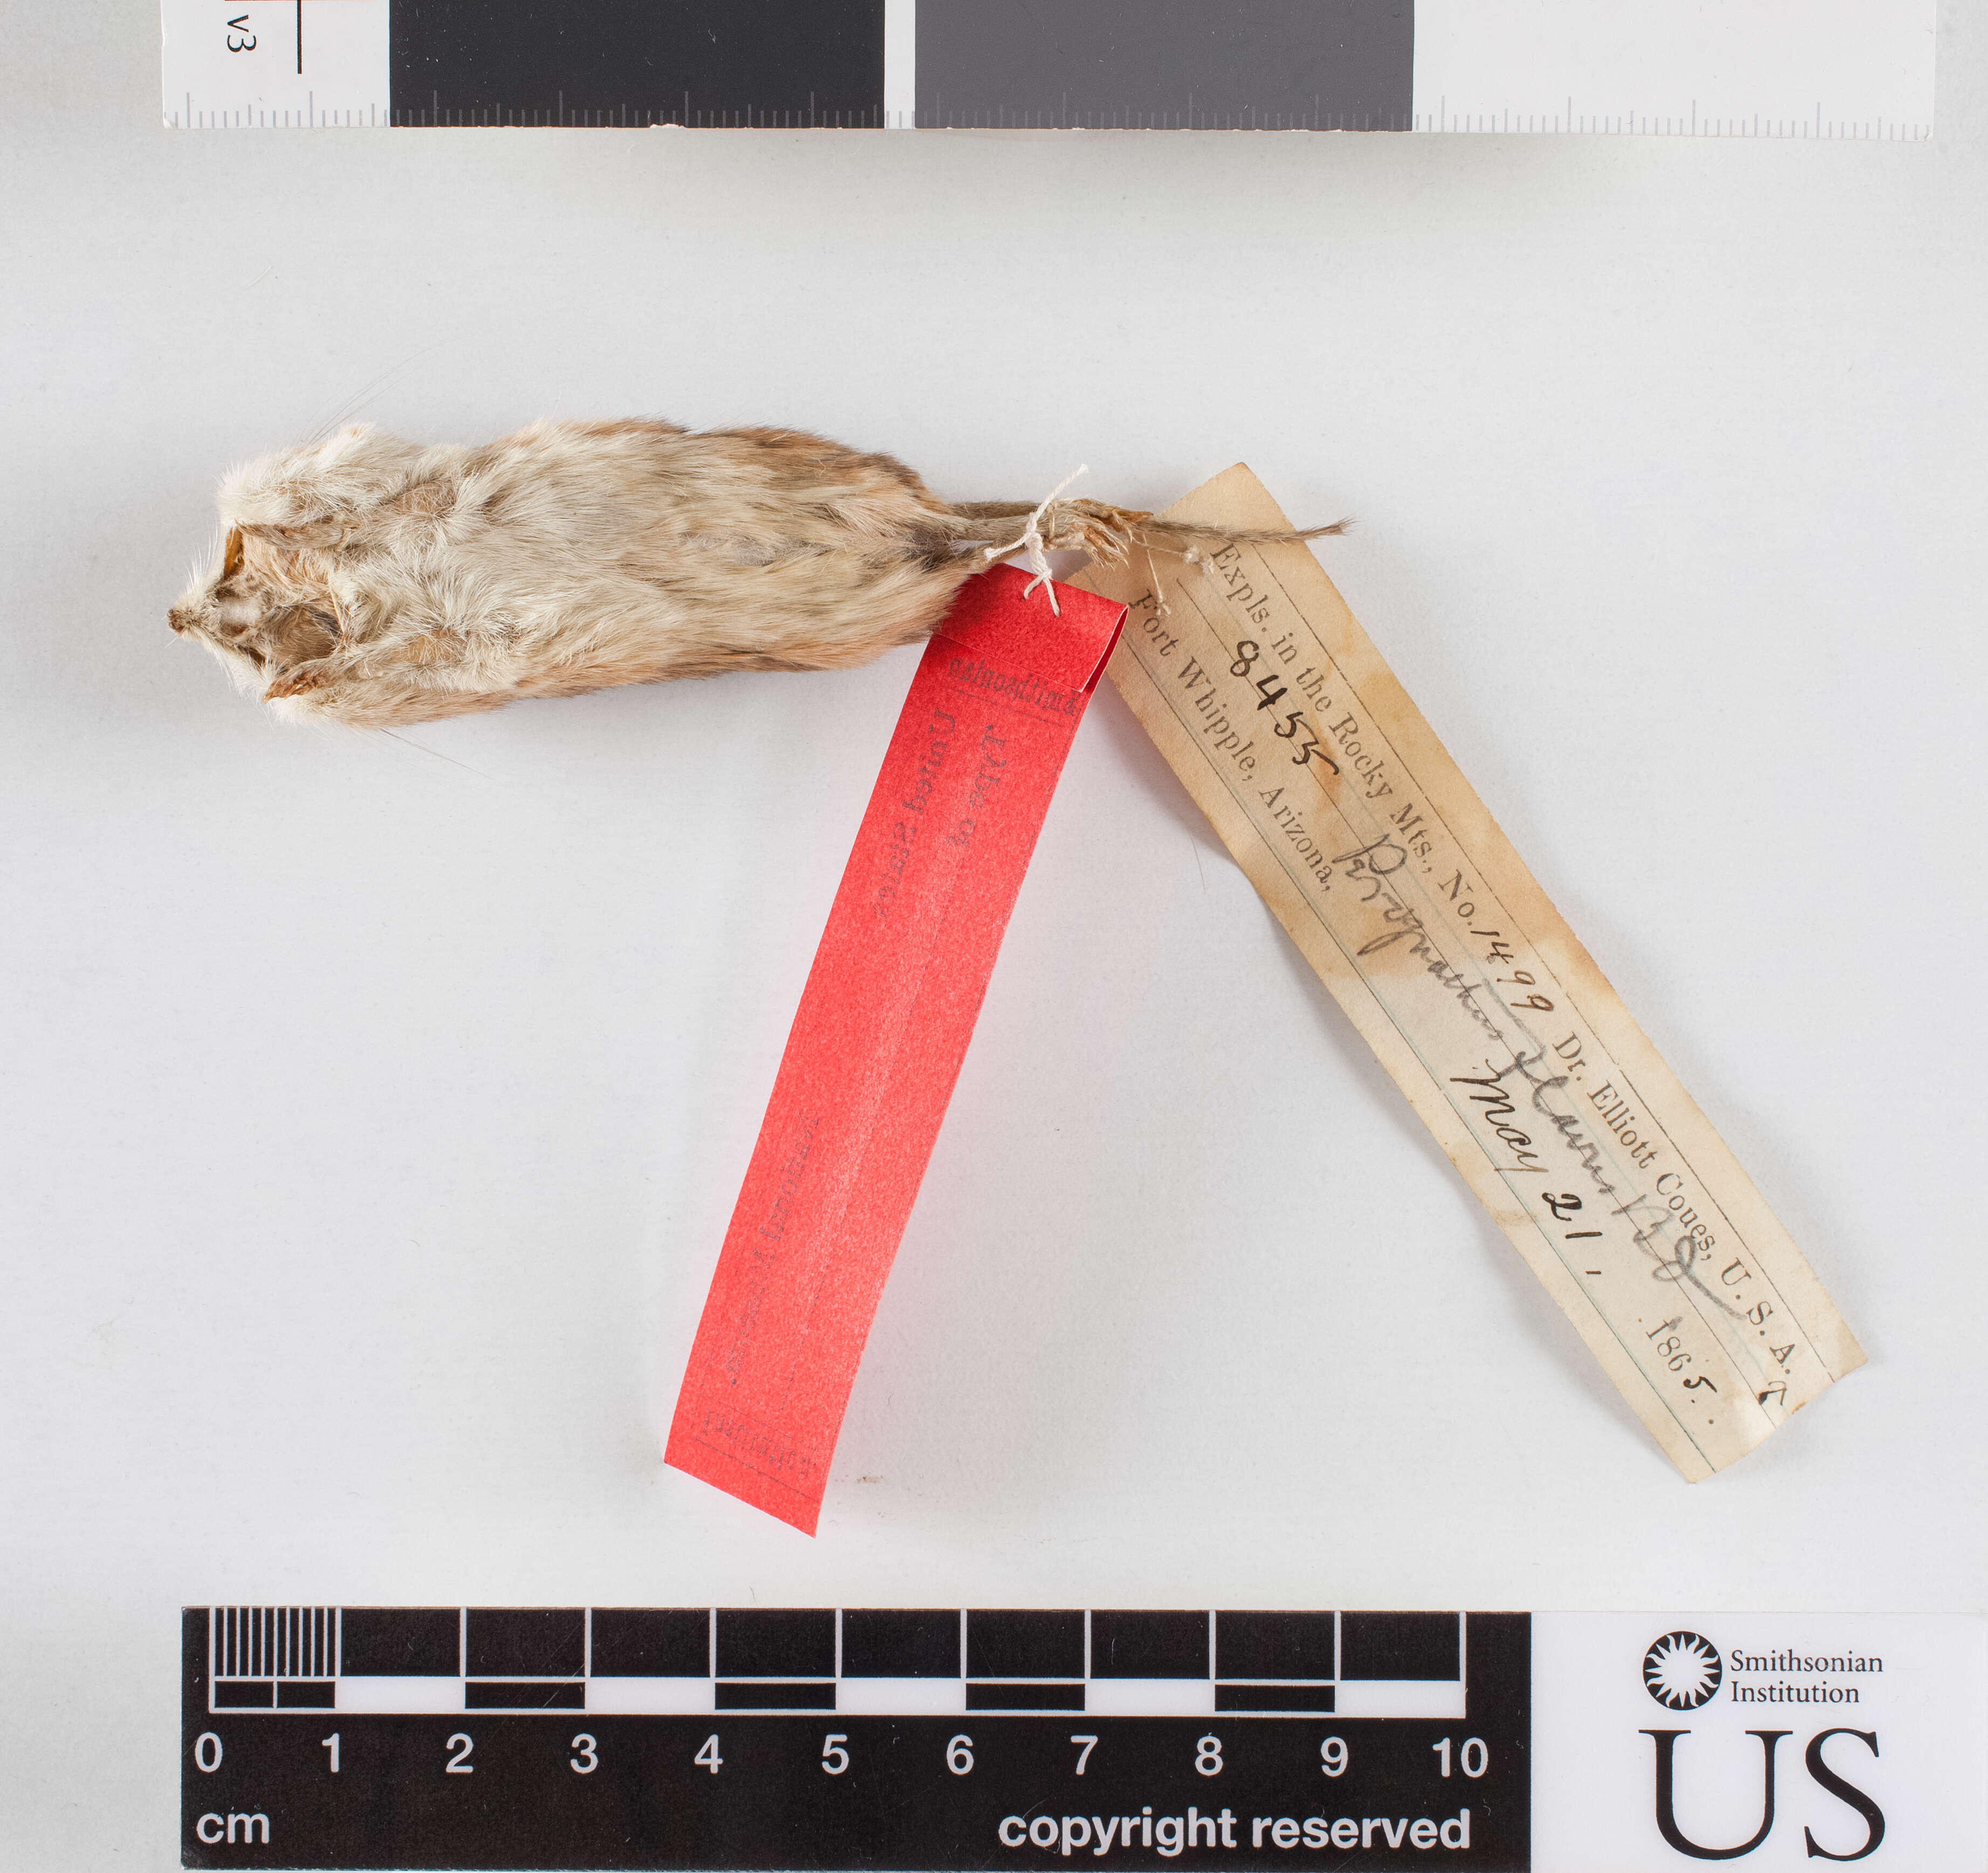 Image of Perognathus flavus bimaculatus Merriam 1889